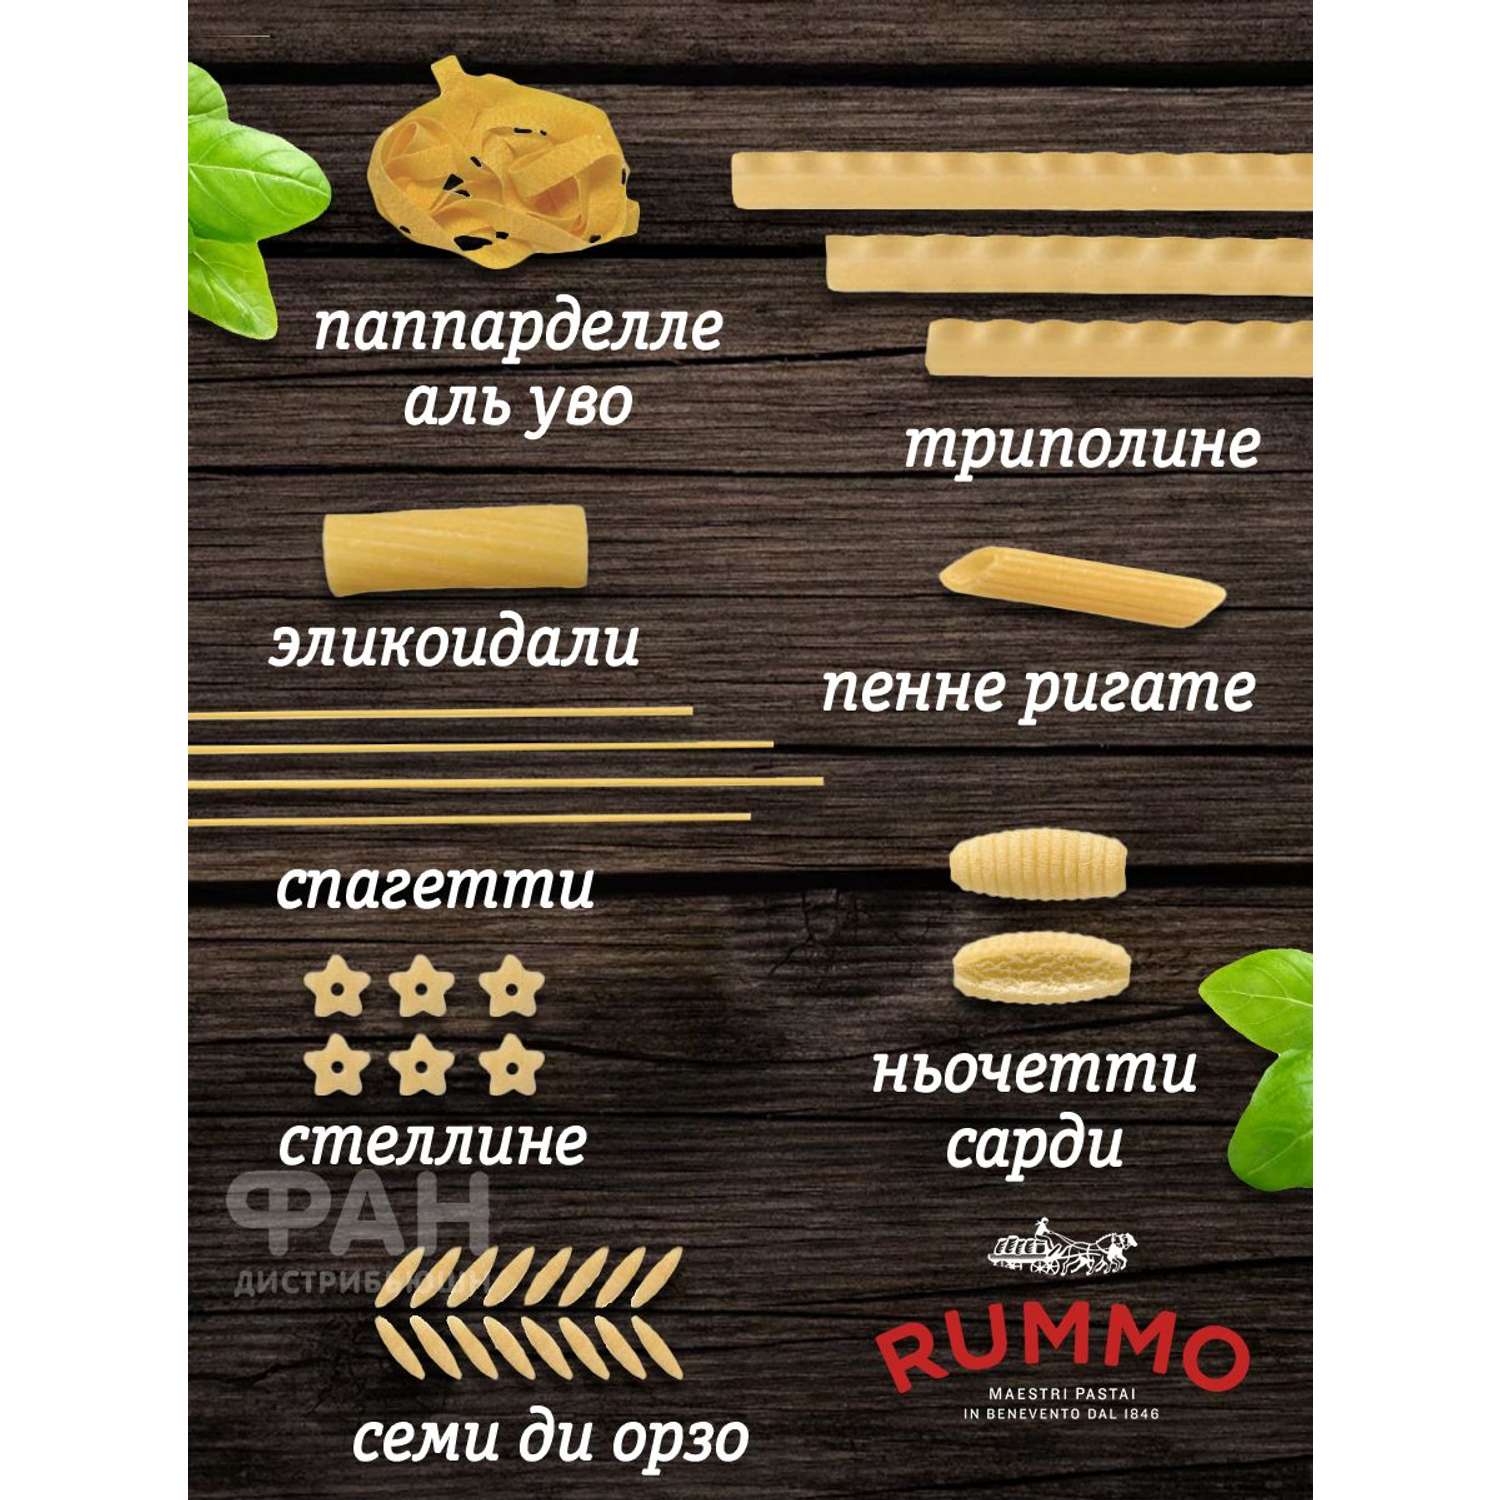 Макароны Rummo паста из твёрдых сортов пшеницы Особые Паккери 3х500 г - фото 9